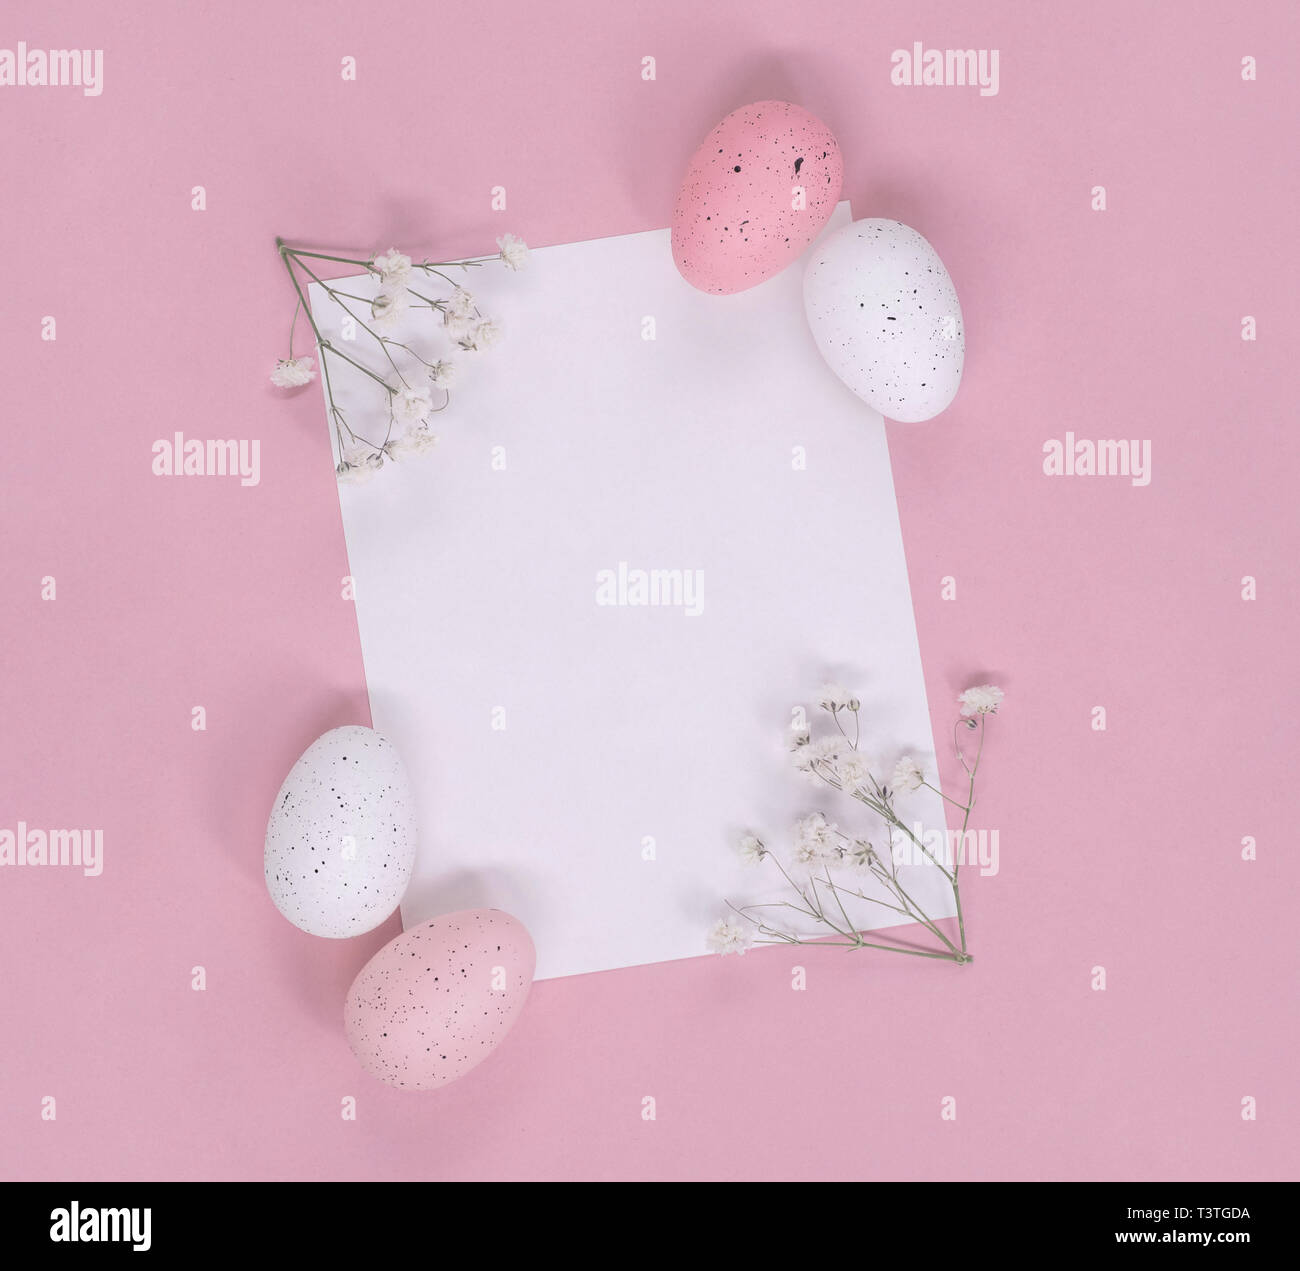 Los huevos de Pascua y flores blancas en torno a una nota de papel en blanco, sobre un fondo de color rosa. Plana con copia espacio laical. Foto de stock